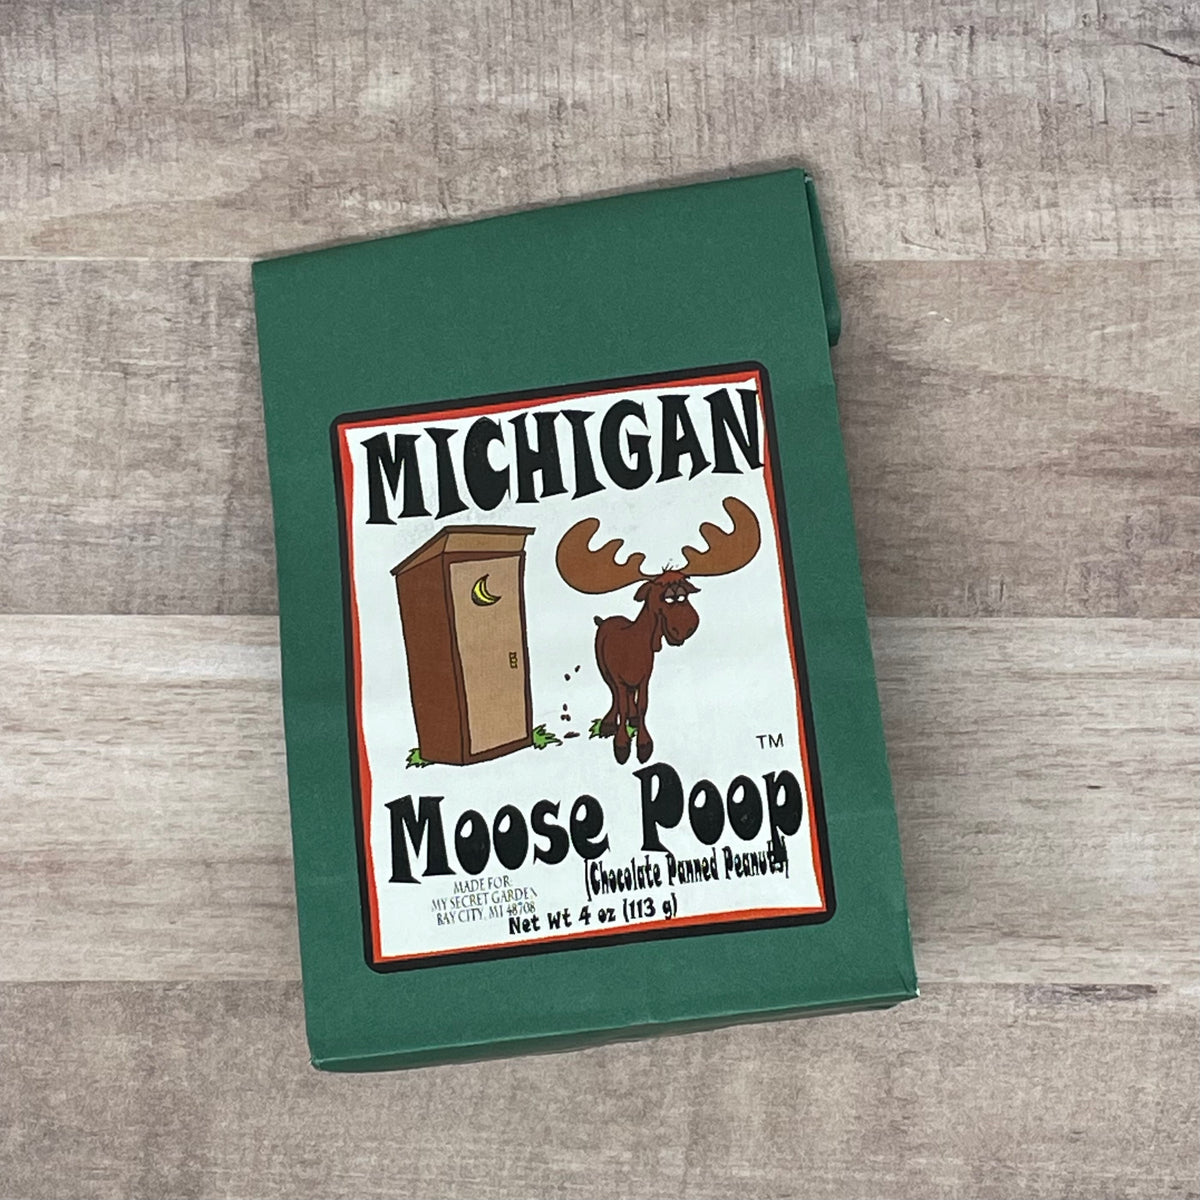 Michigan Moose Poop Chocolate Panned Peanuts